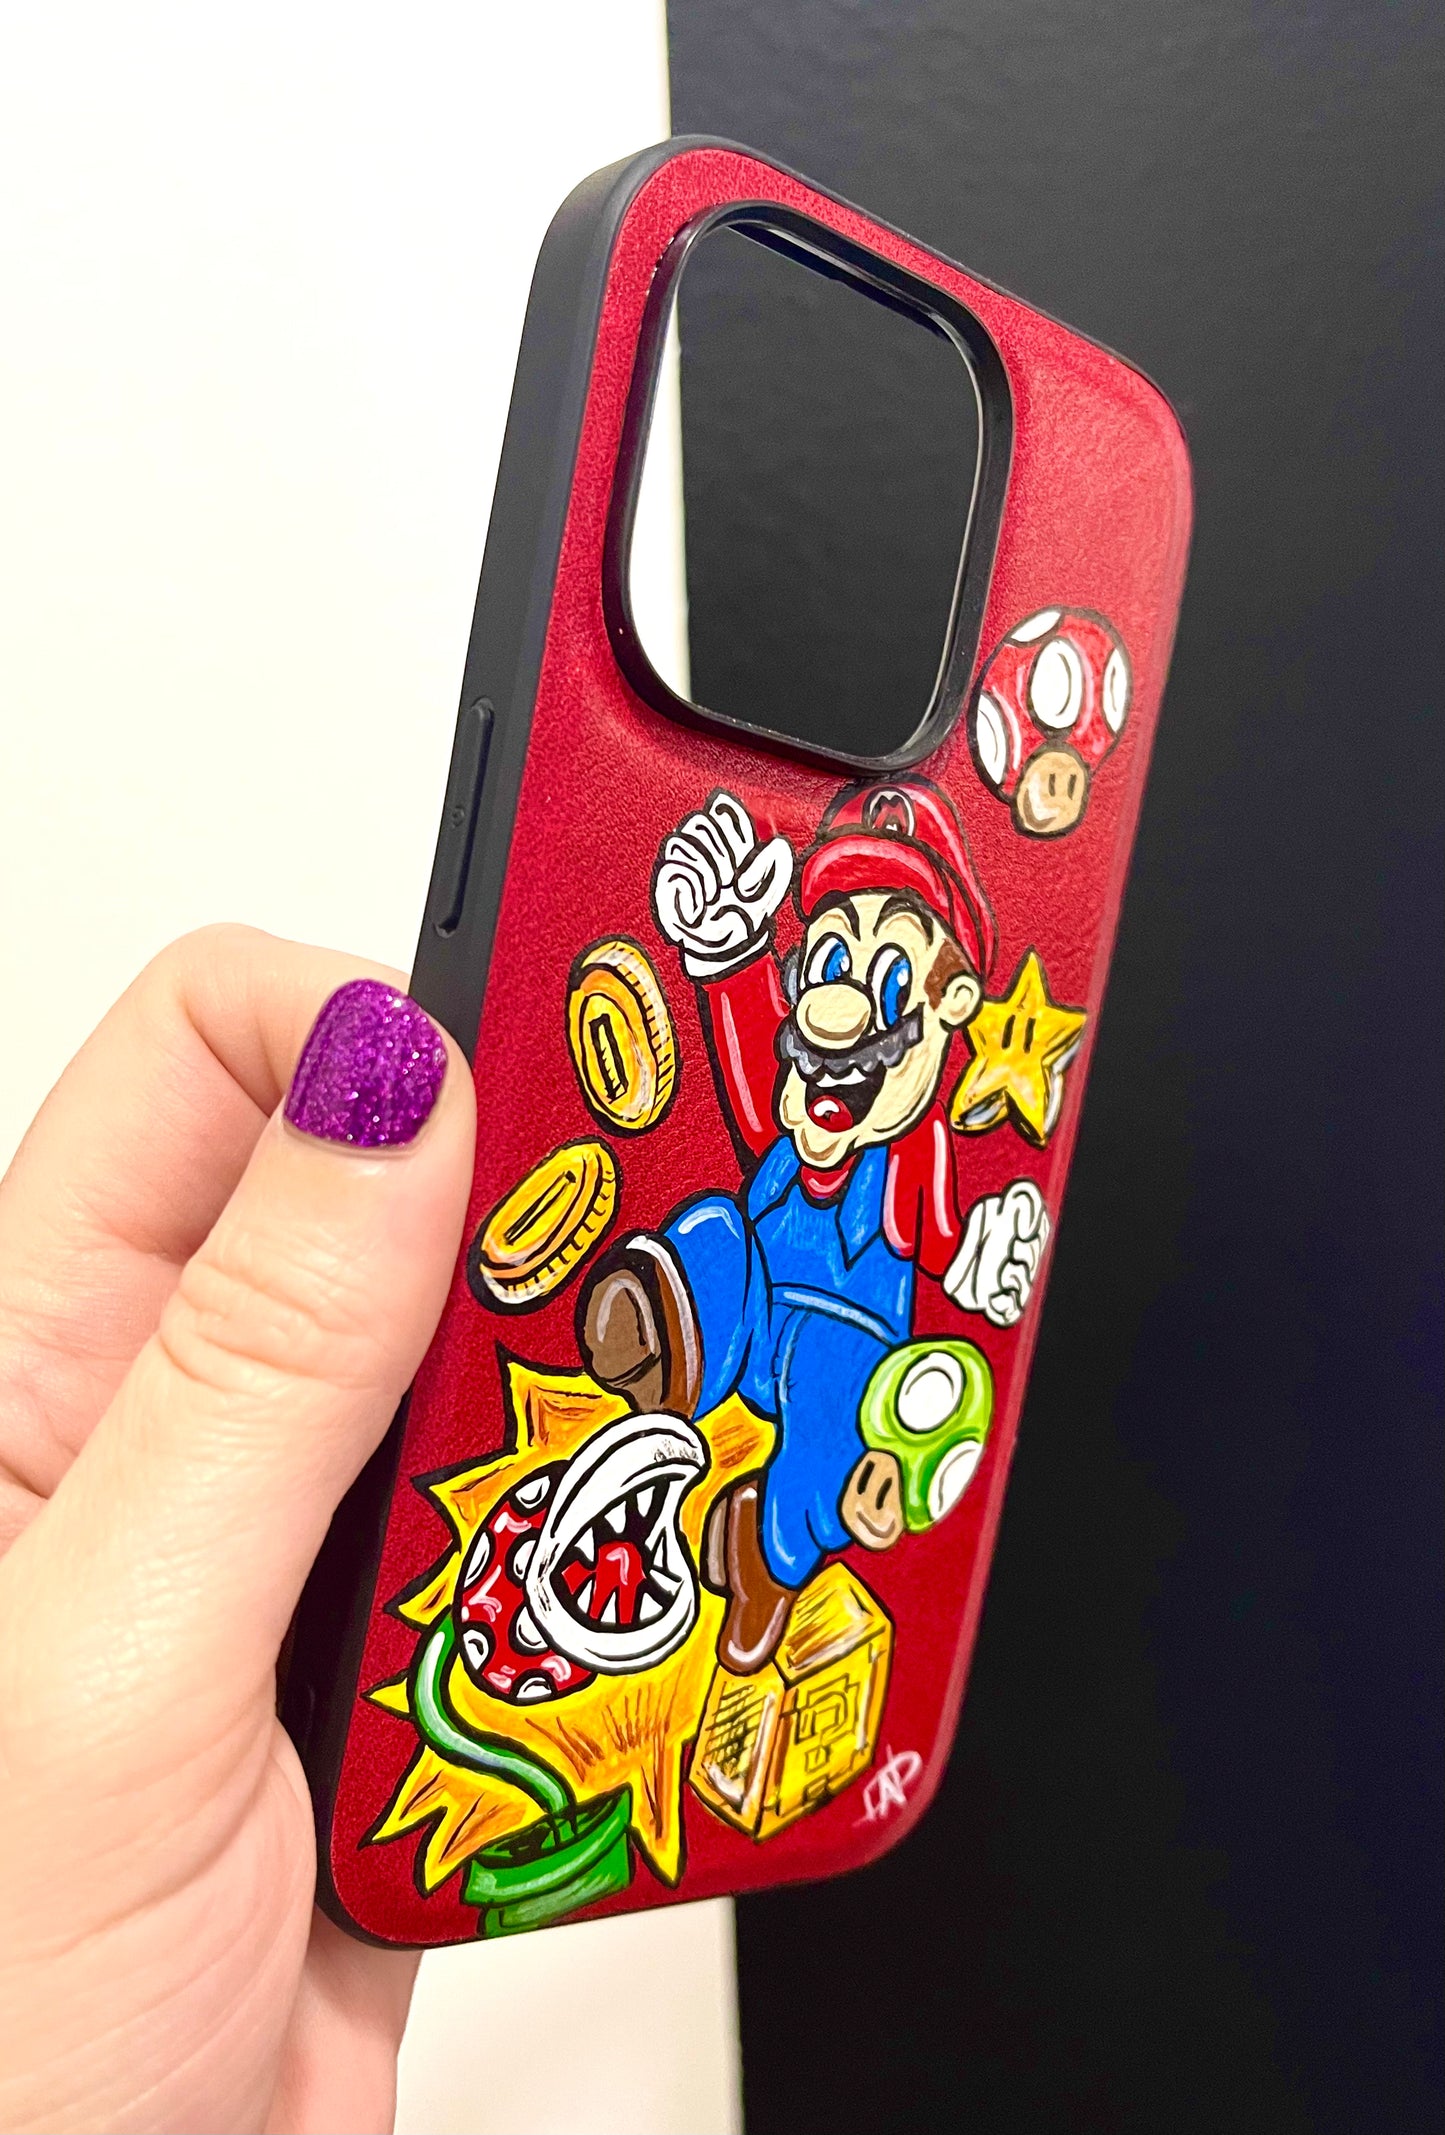 Mario Phone Case